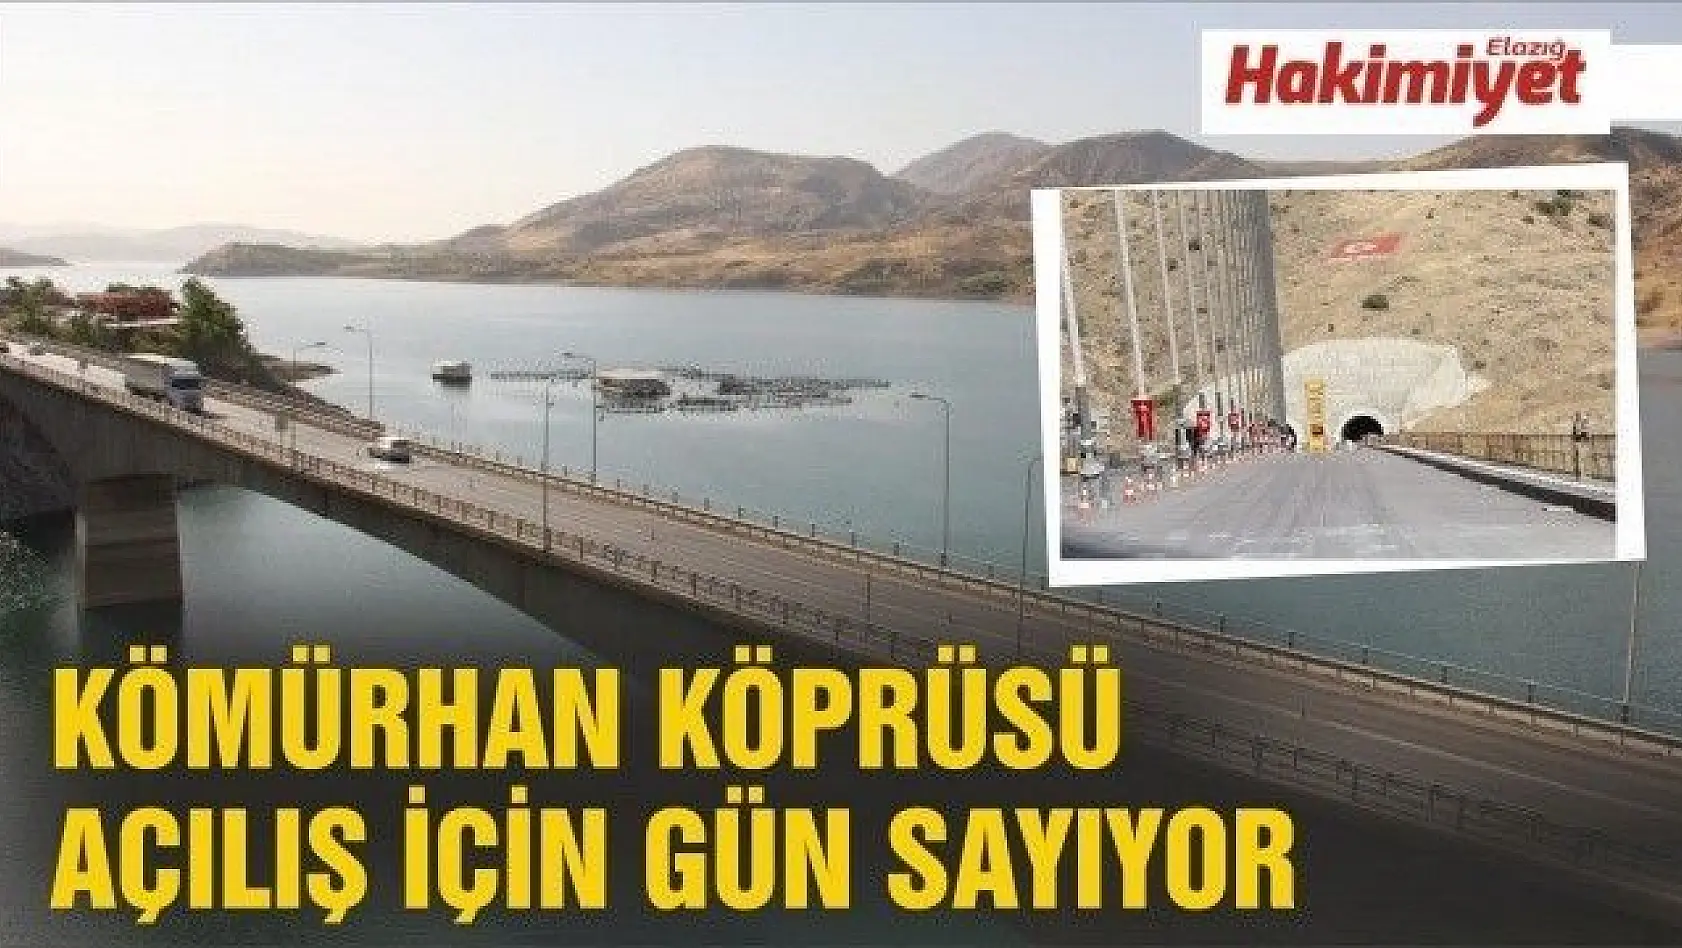 Yeni Kömürhan Köprüsü ve tüneli açılış için gün sayıyor